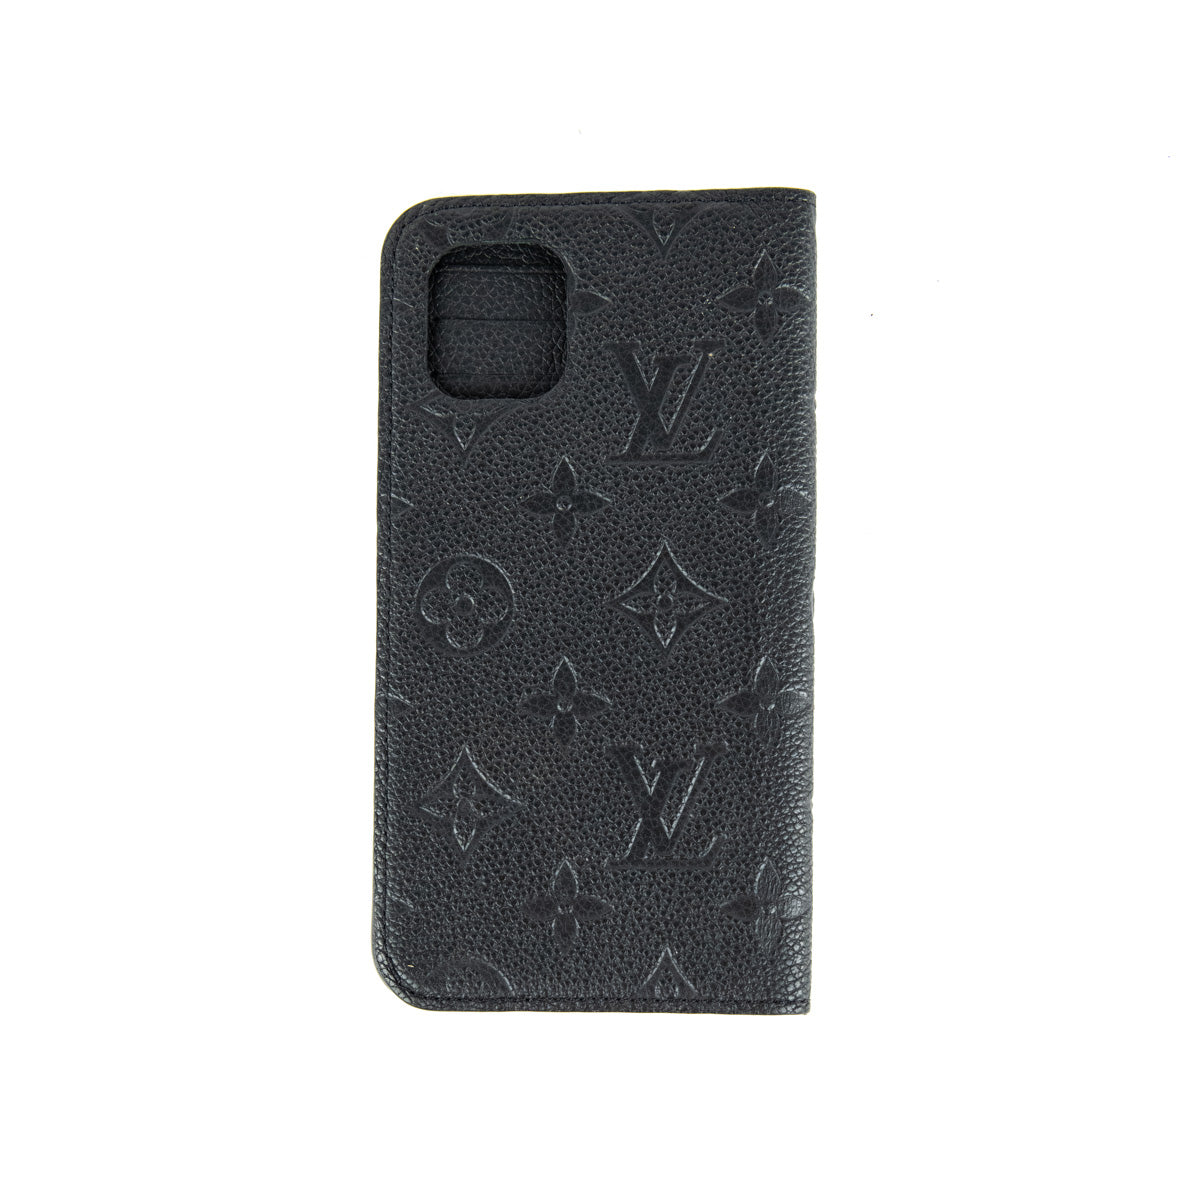 Case for iPhone 12 Pro - Louis Vuitton Black